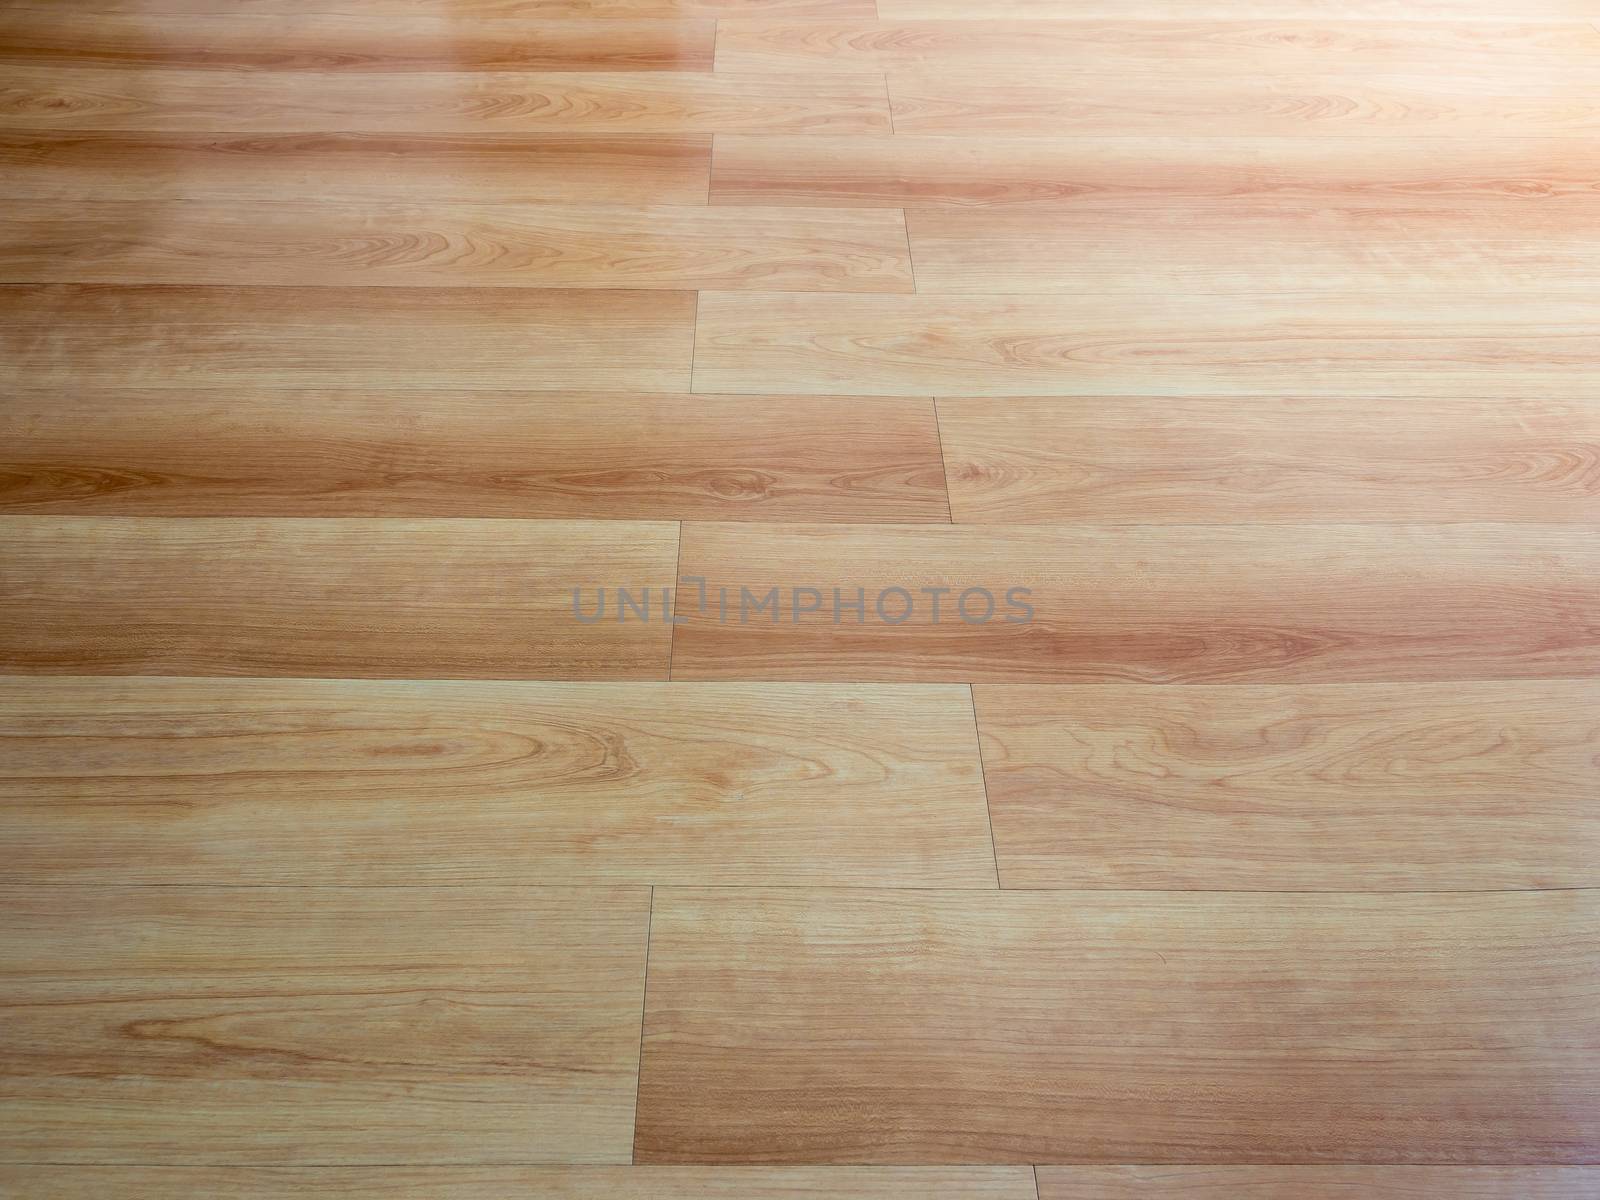 new wooden floor of brown color